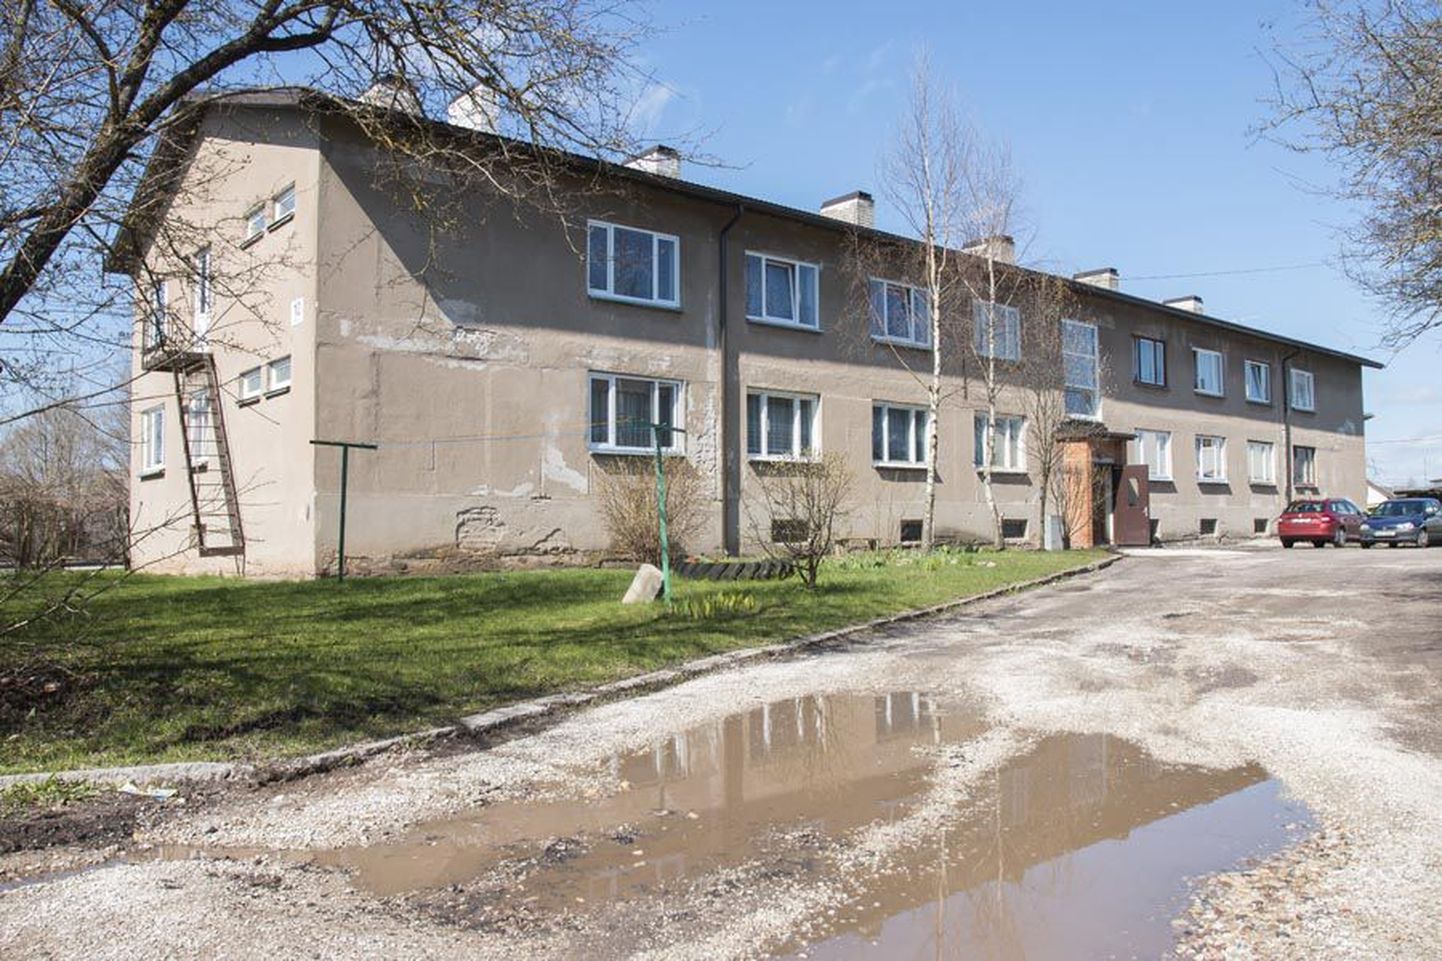 Malmi tänav 10 majas on pooled korterid Viljandi linna omad. Linnavalitsus neid maha ei müü, vaid kavatseb need muuta sotsiaalkorteriteks.